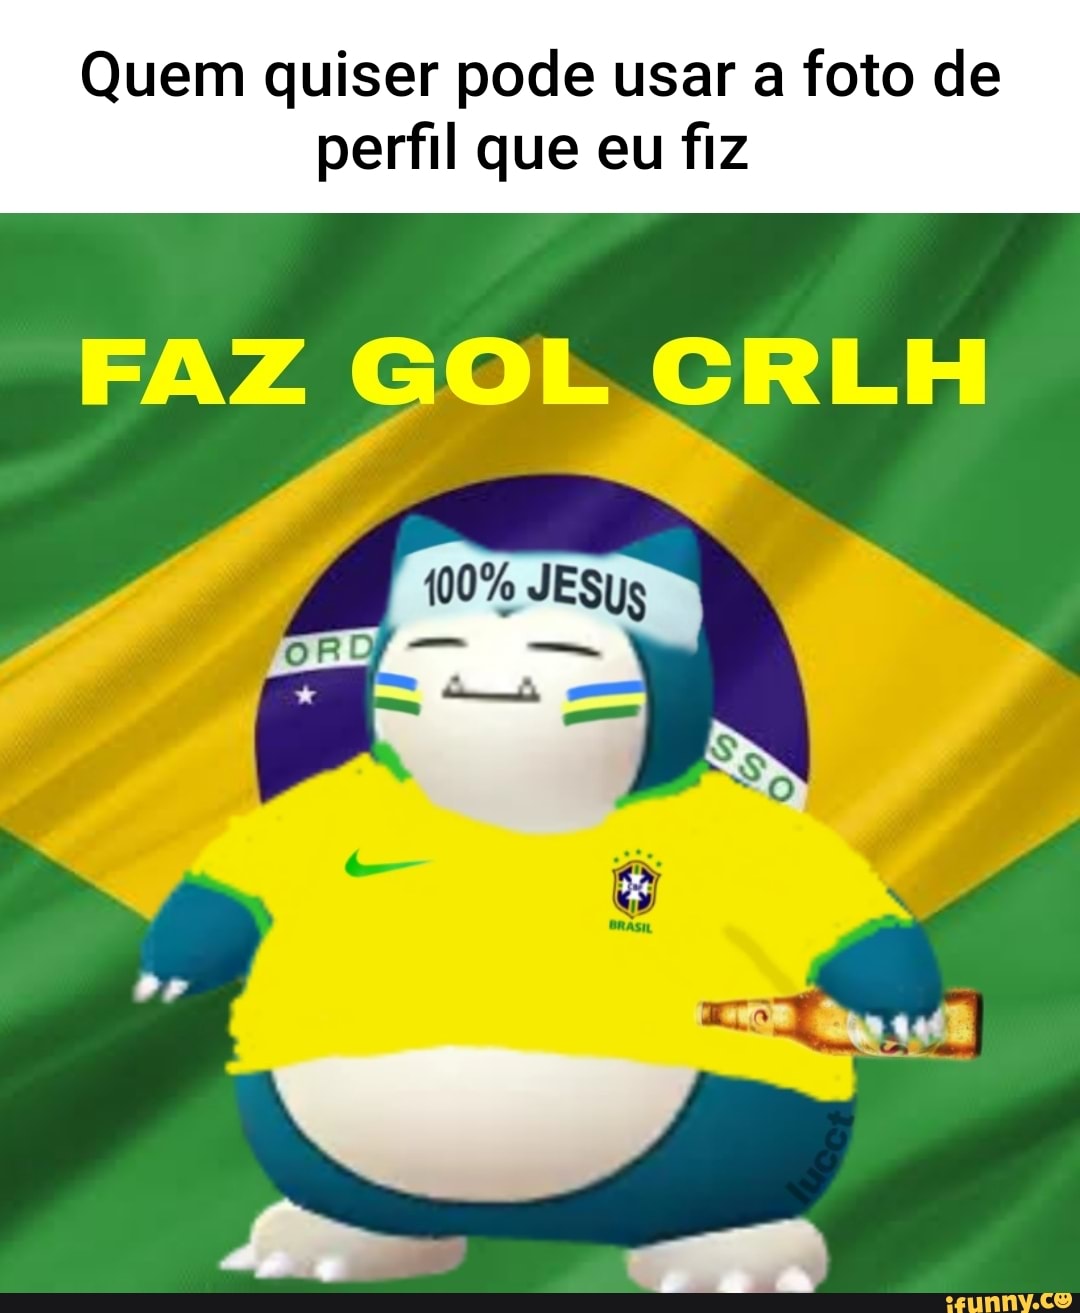 Memes de imagem pqElCXKE7 por Freesdo_2017: 13 comentários - iFunny Brazil